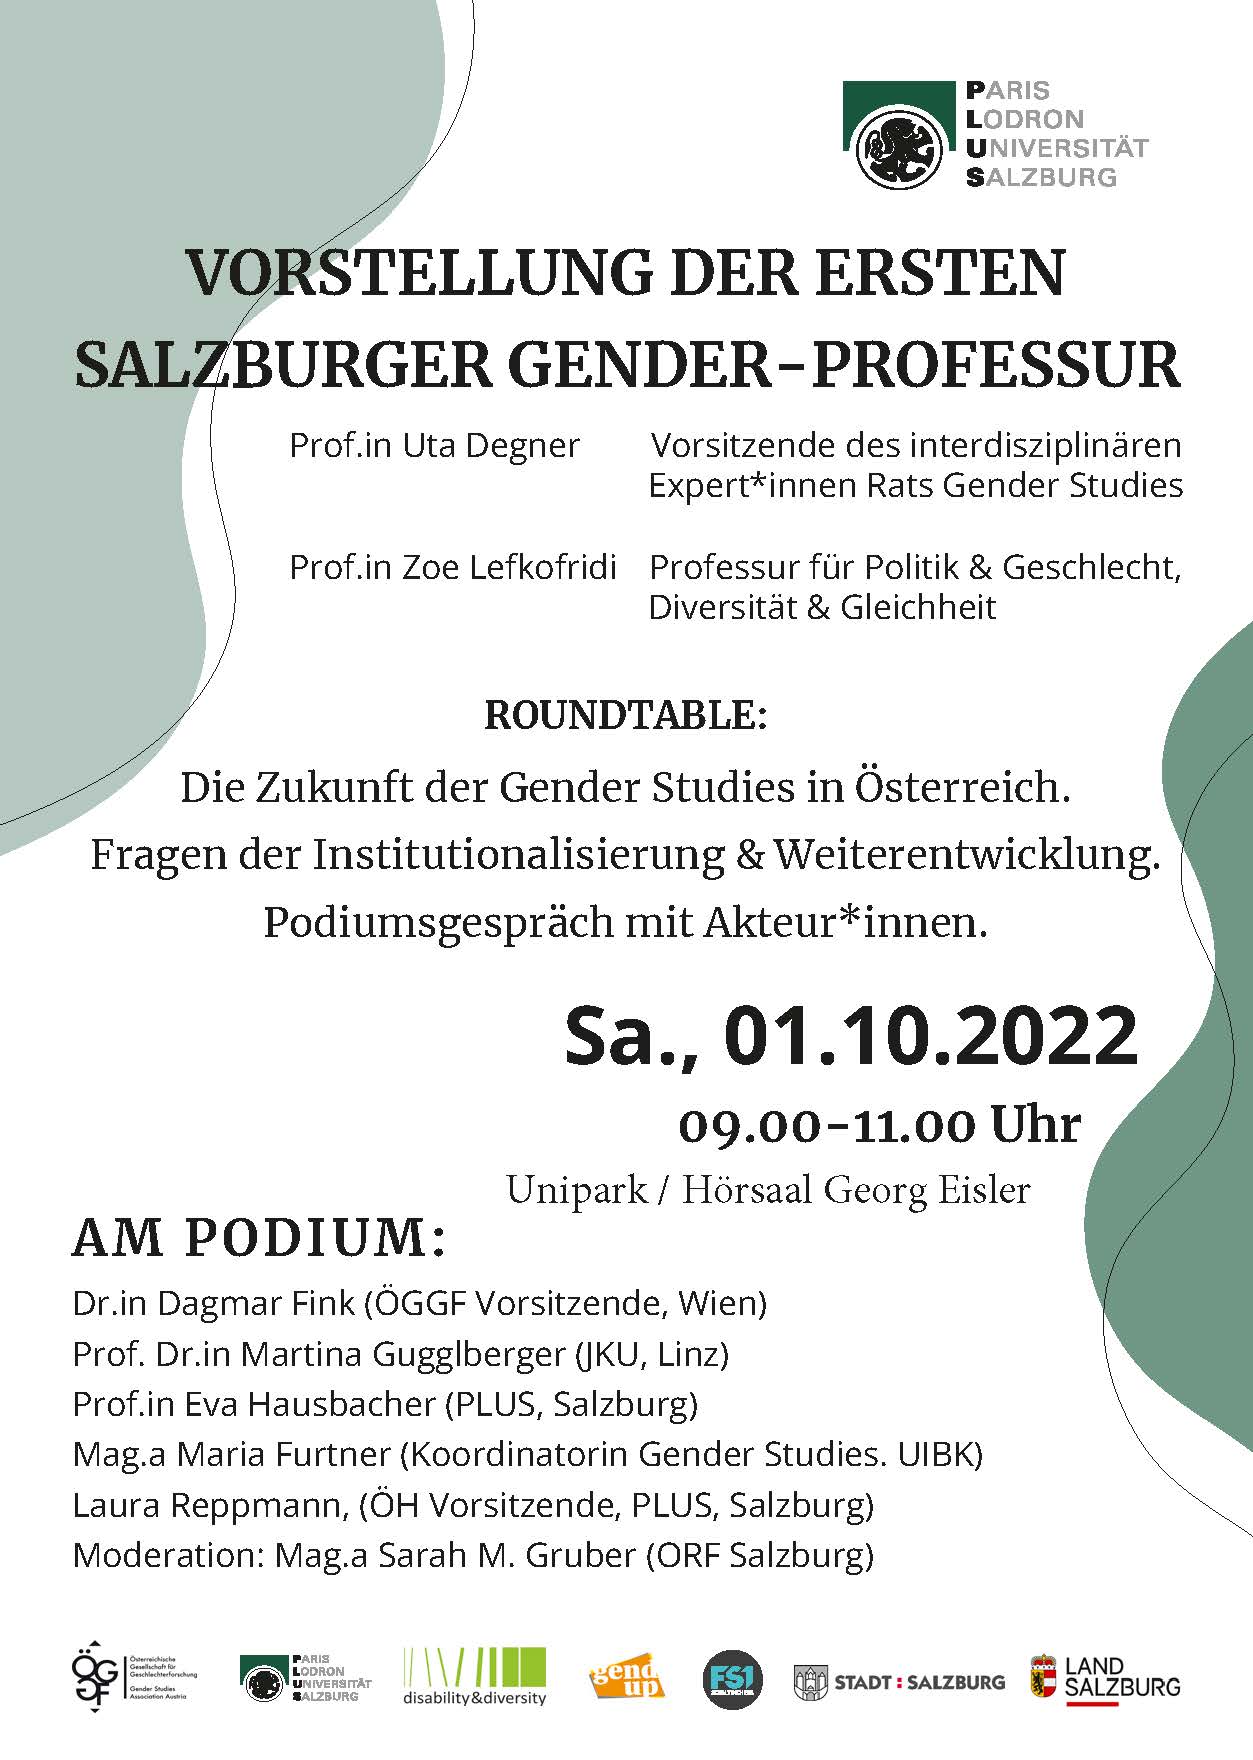 Zum Abschluss der Tagung findet am 01.10. 2022von 09:00 bis 11:00 Uhr der Roundtable zum Thema "Die Zukunft der Gender Studies in Österreich. Fragen der Institutionalisierung & Weiterentwicklung. Podiumsgespräch mit Akteur*innen" statt. 